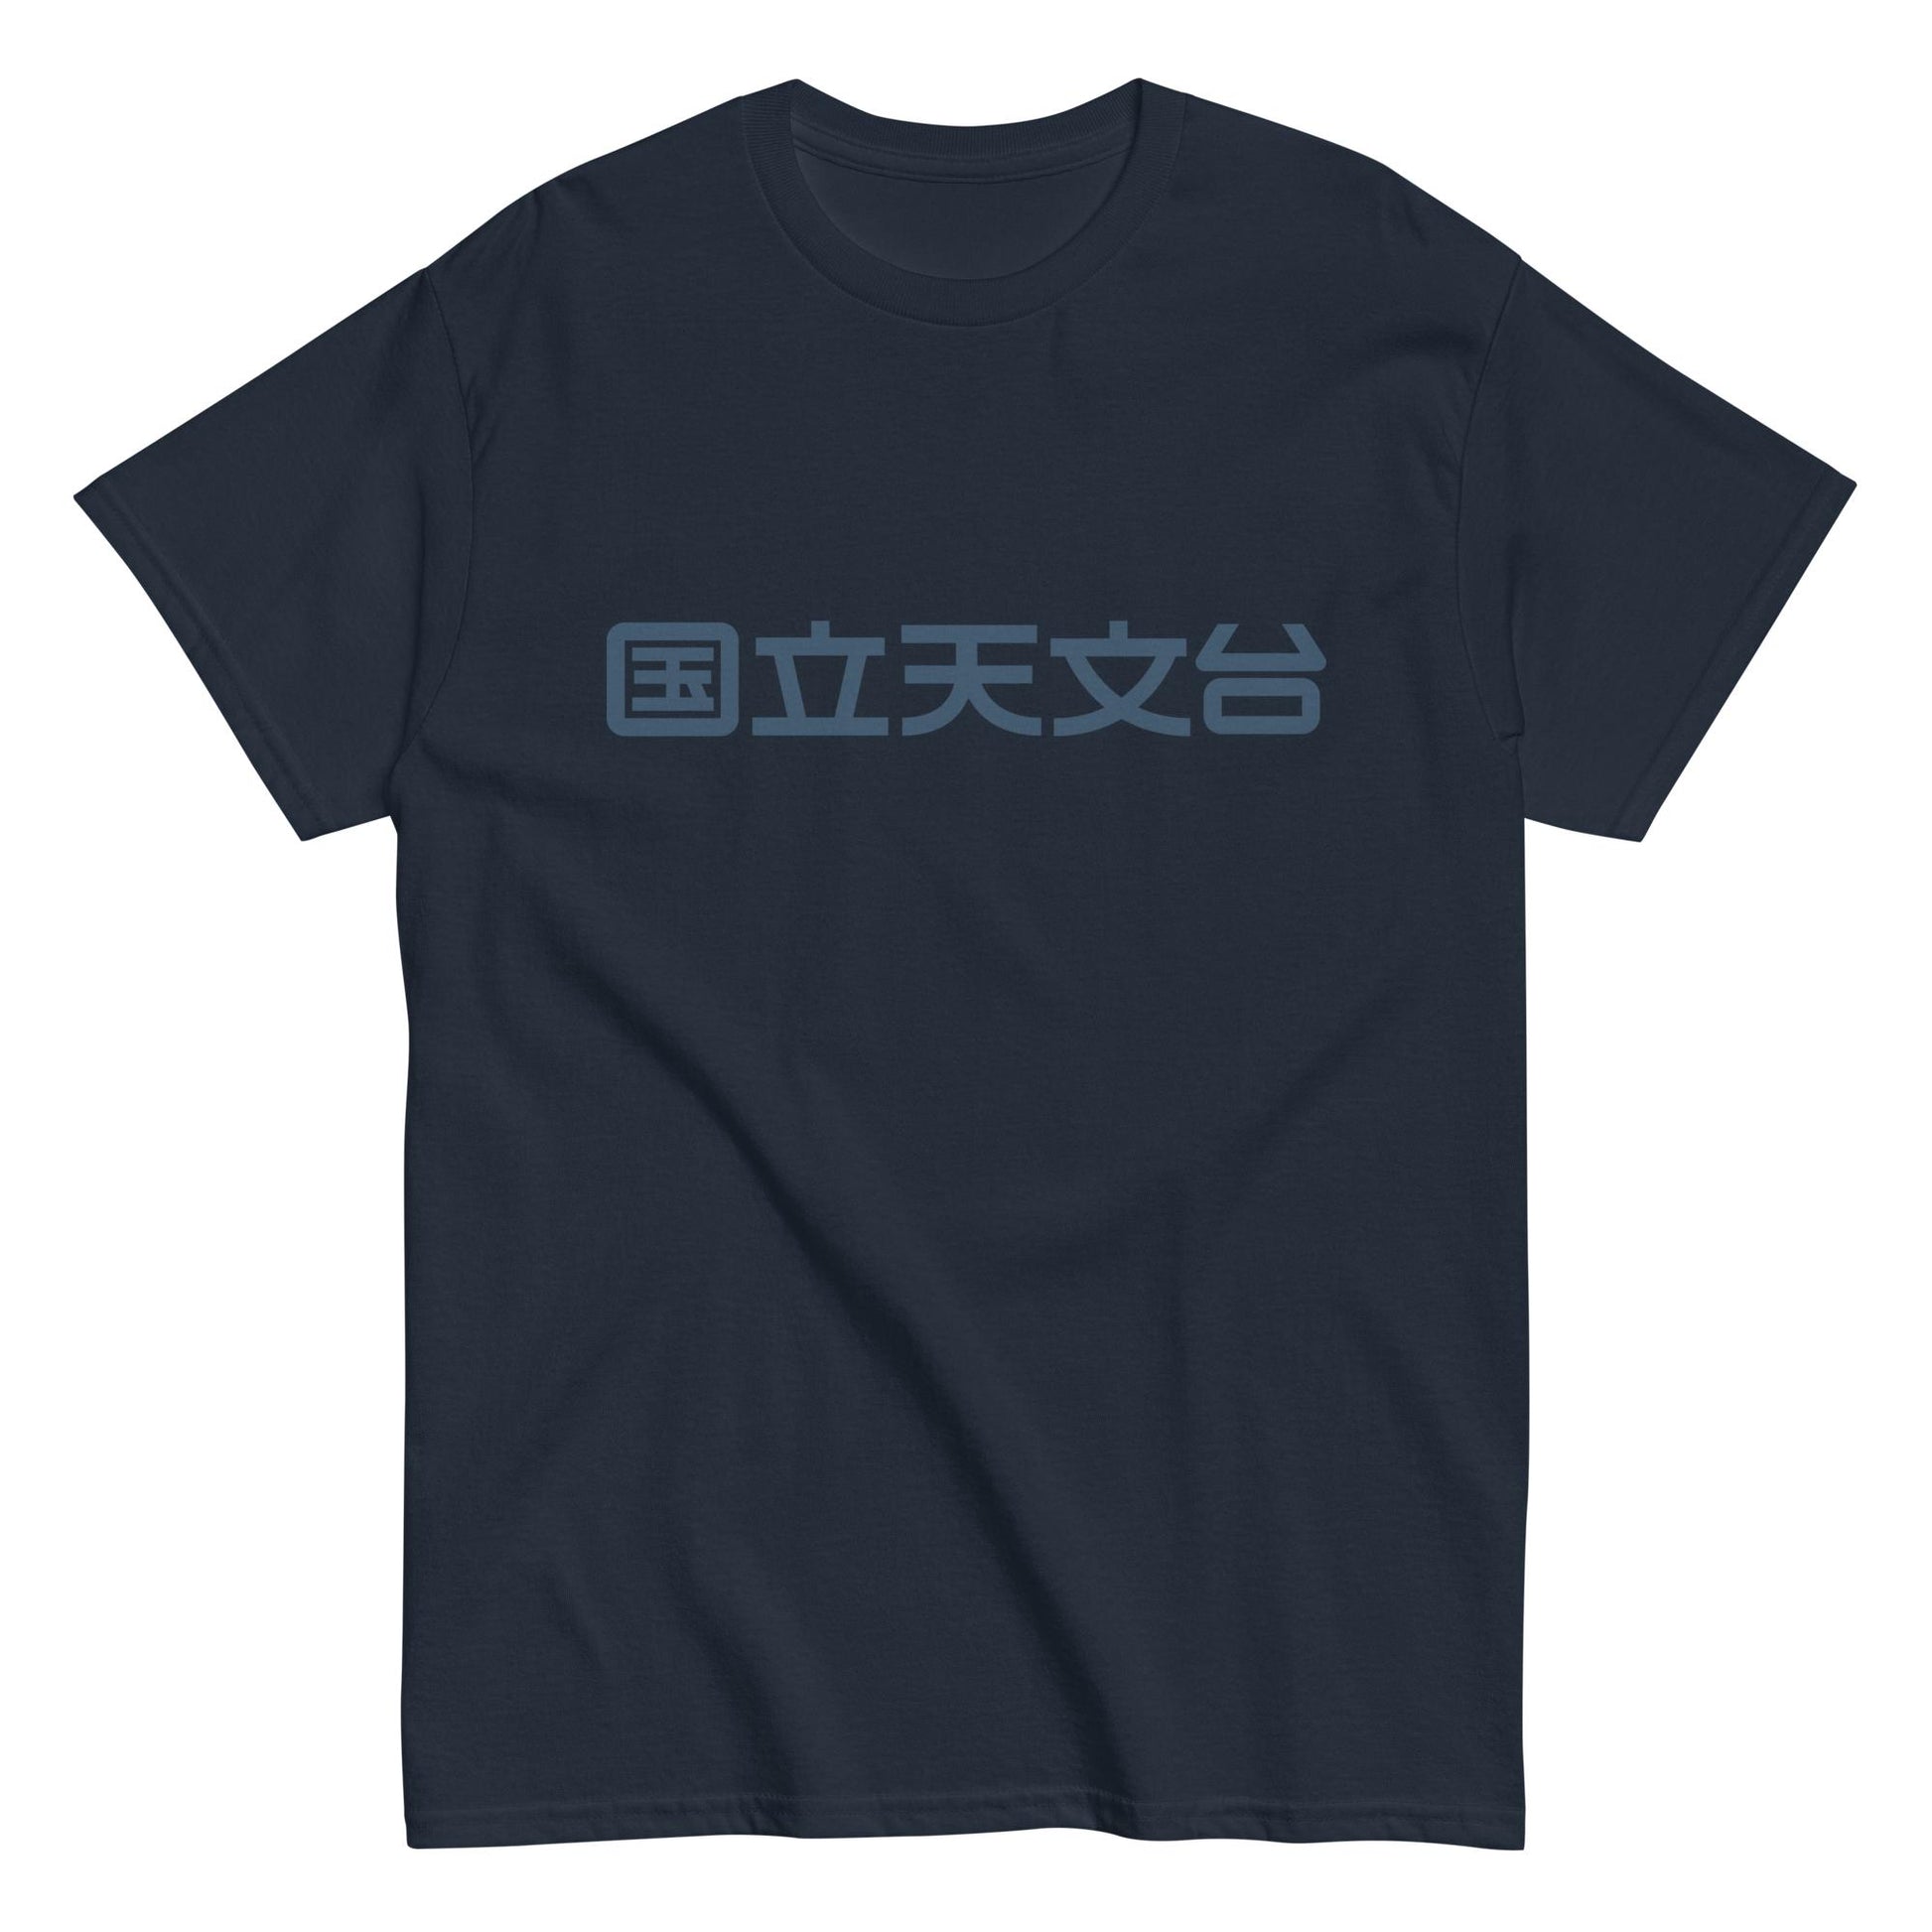 国立天文台 NAOJ漢字 ロゴマーク ヘビーウェイト Tシャツ ネイビー x ネイビー S 00